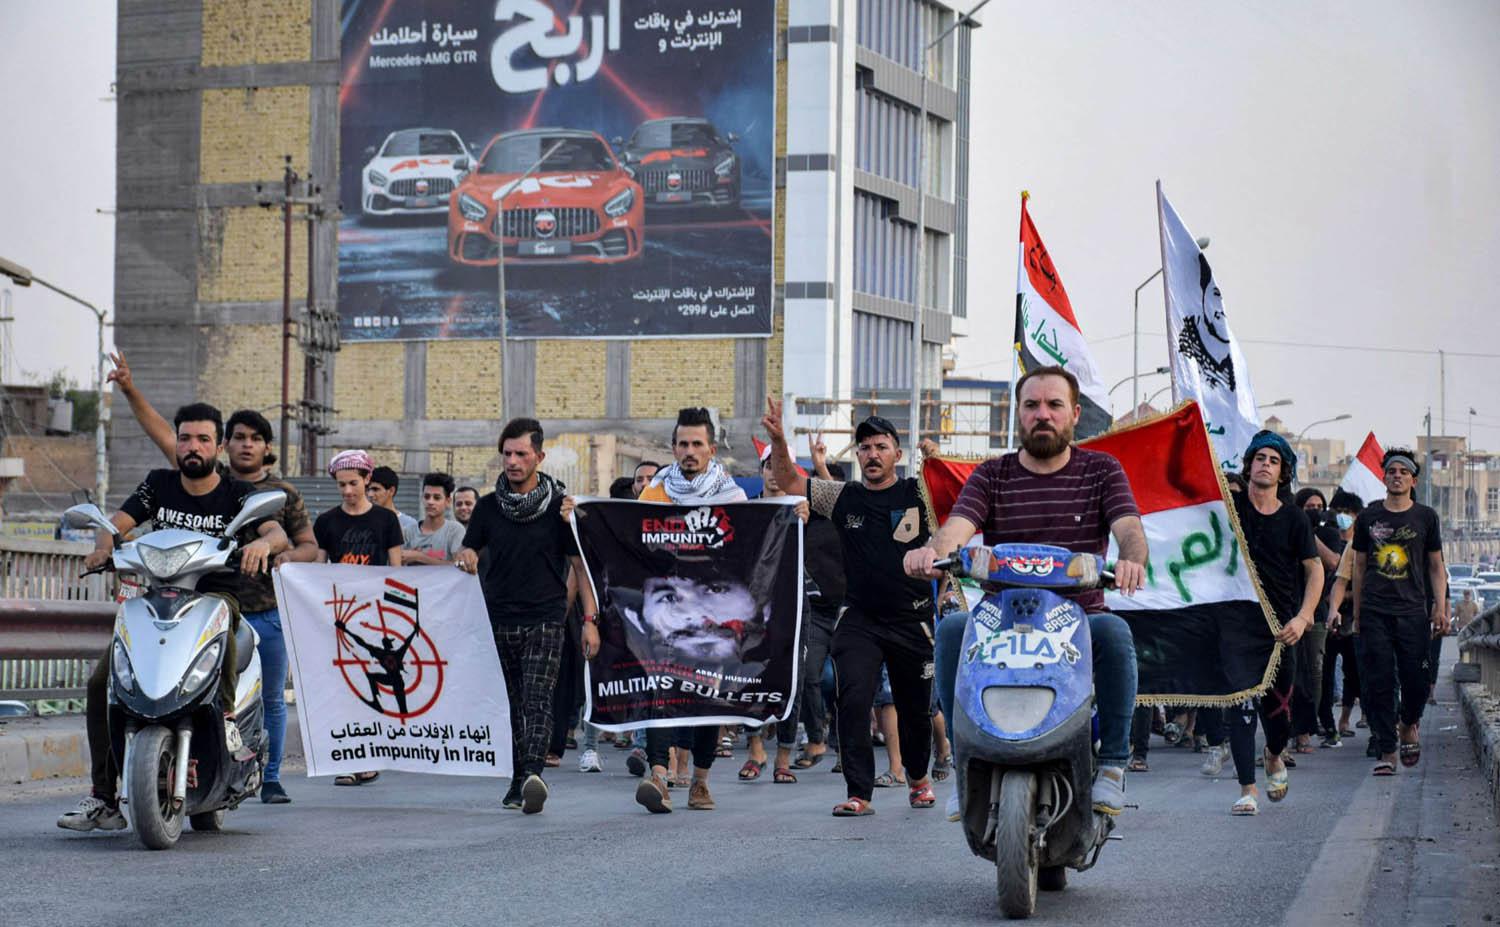 تظاهرة عراقية في مدينة الناصرية تطالب بمعرفة المسؤول عن قتل الناشطين